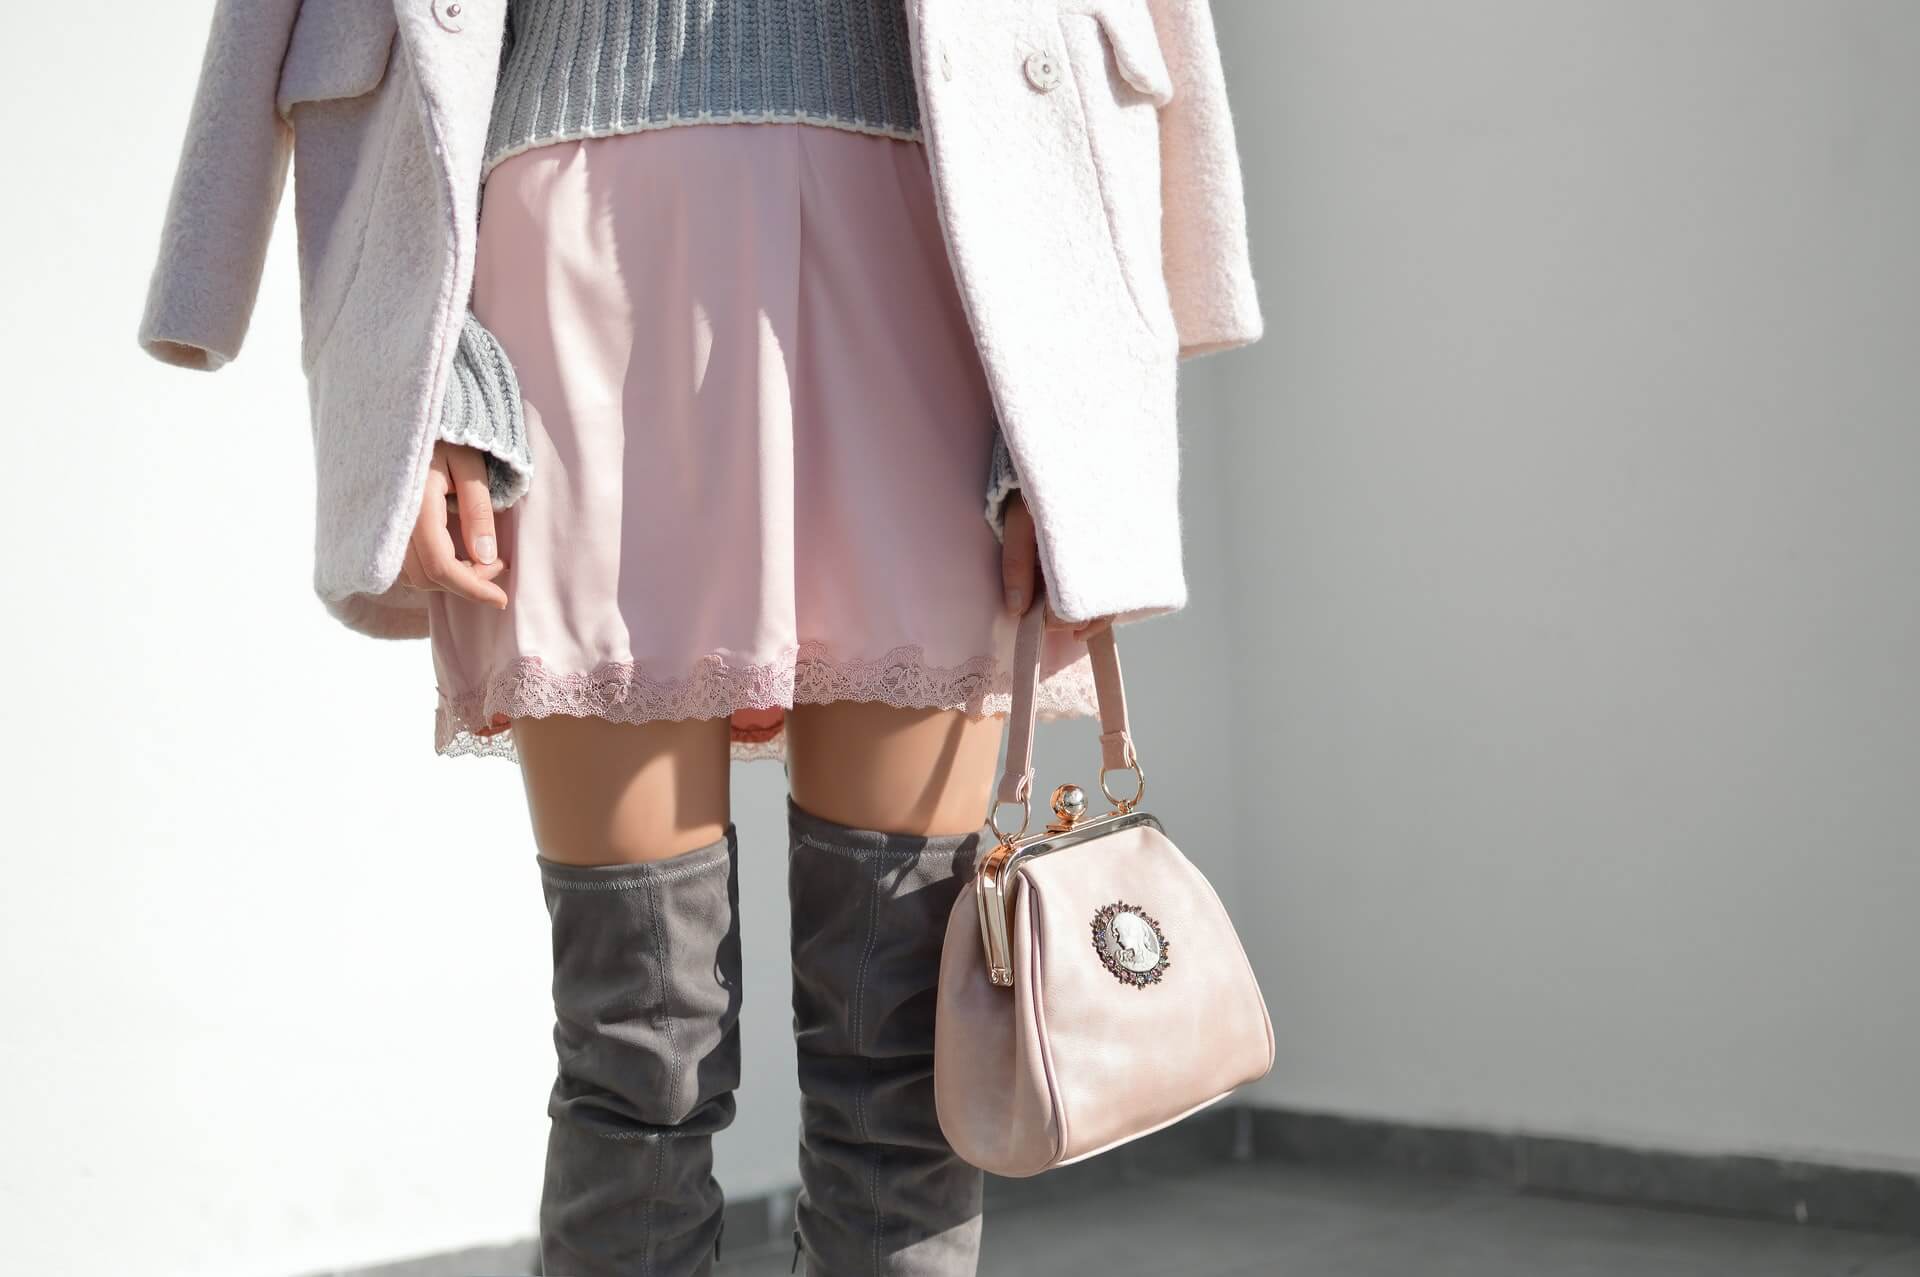 Asortare pantofil geanta în functie de culoare - cizme gri si geanta roz prafuit